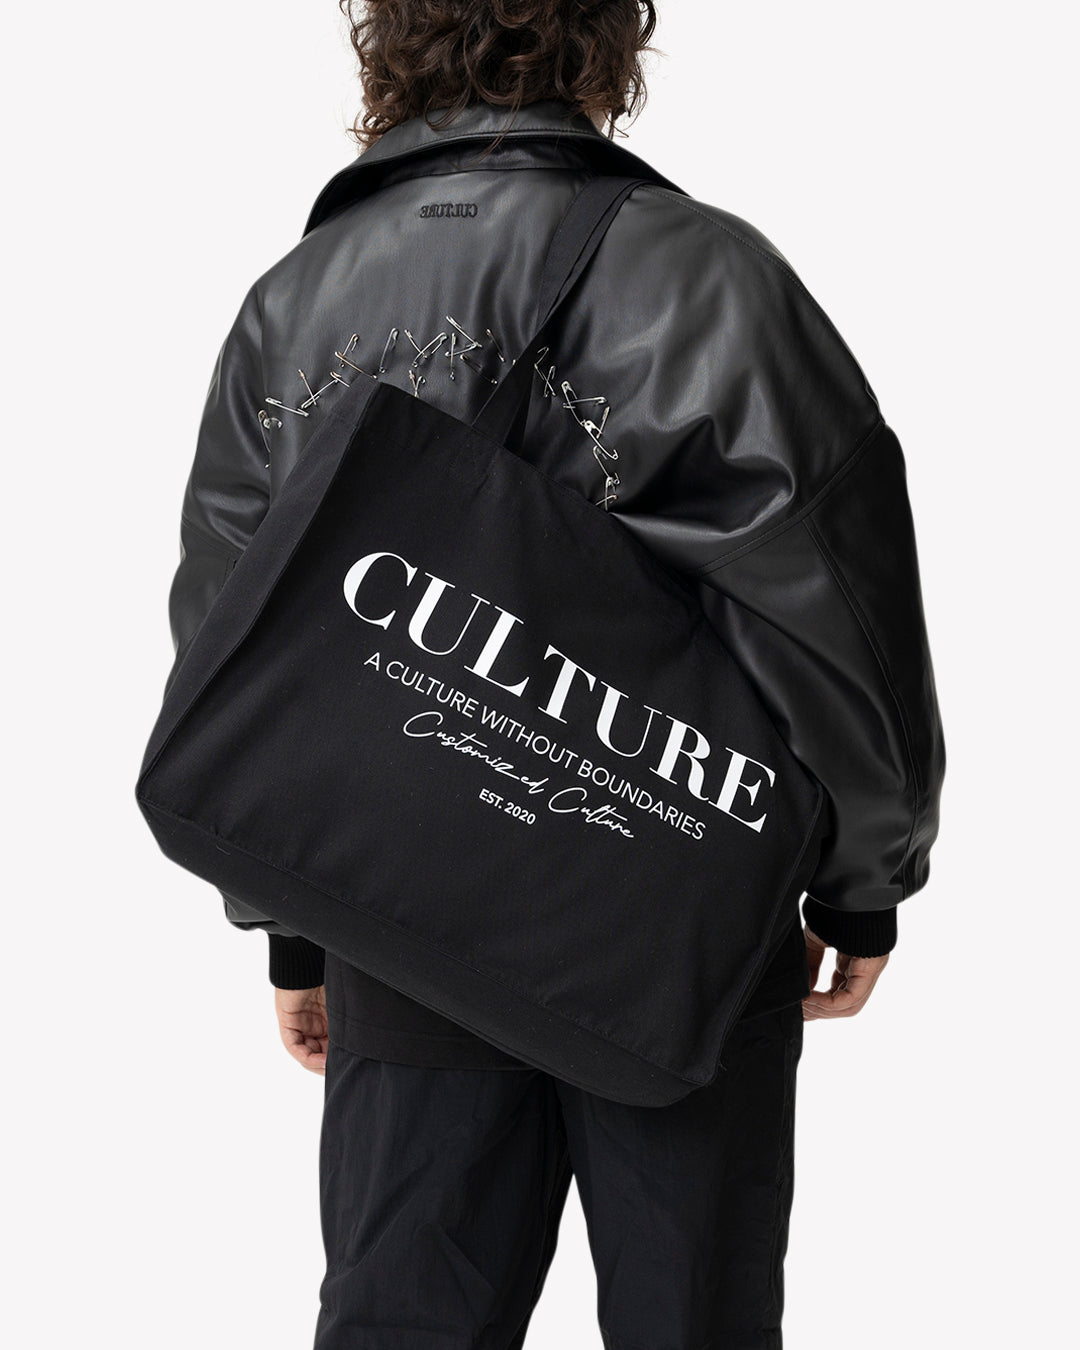 Culture XXL Tote Bag | Customized Culture